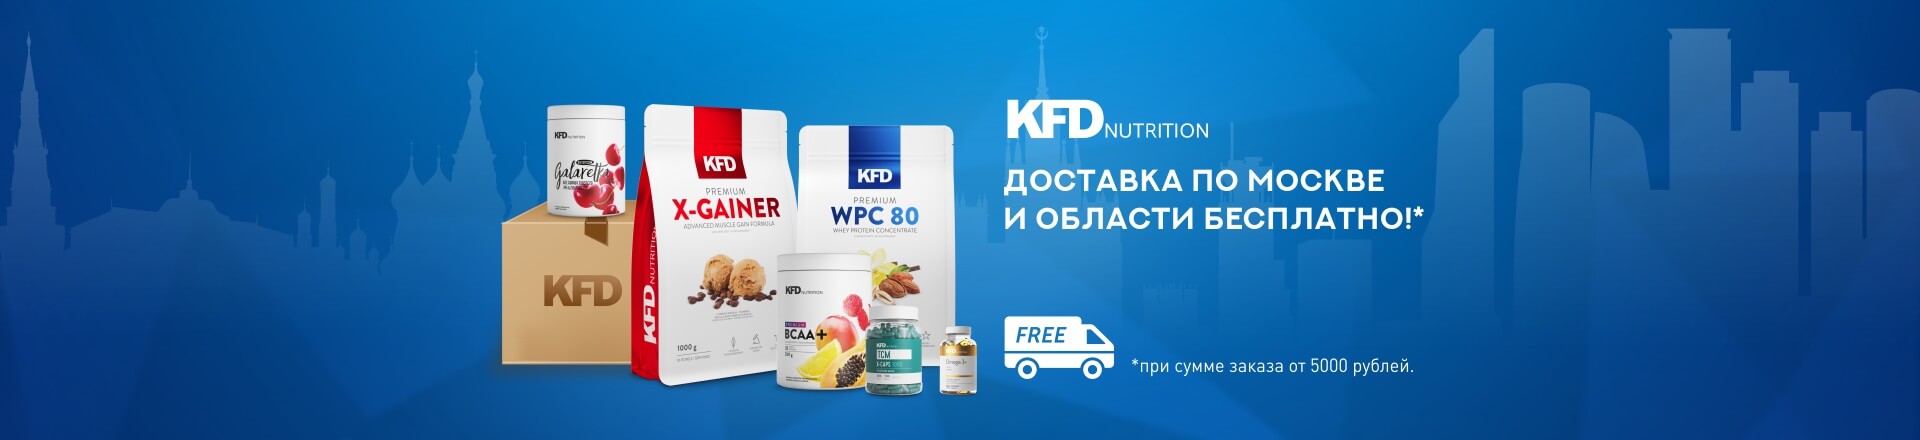 Акция отмагазина KFD Nutrition